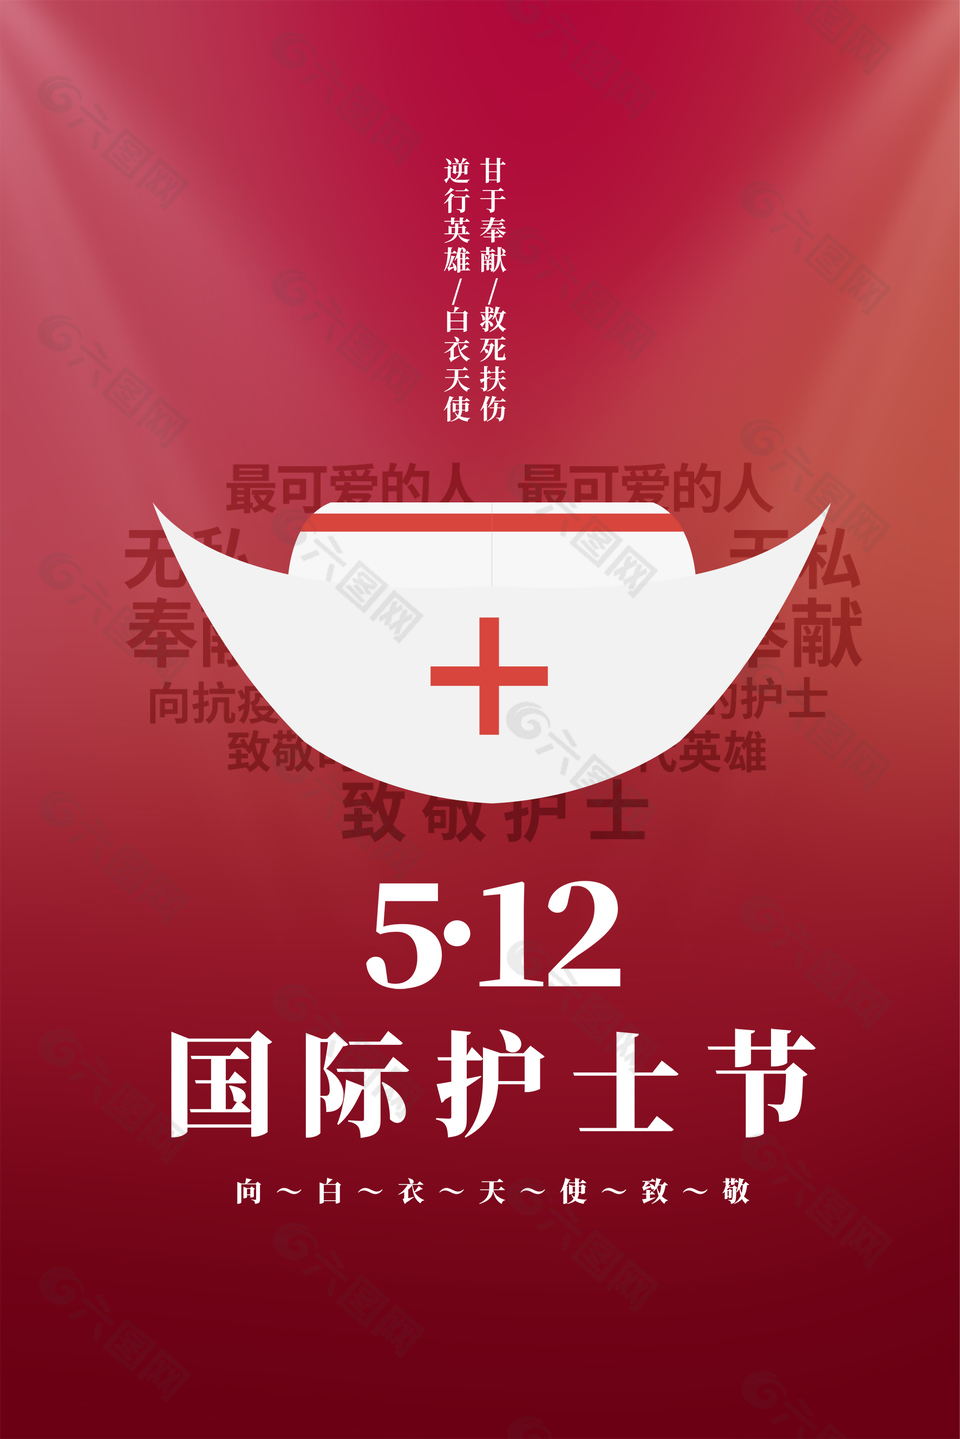 512护士节海报设计